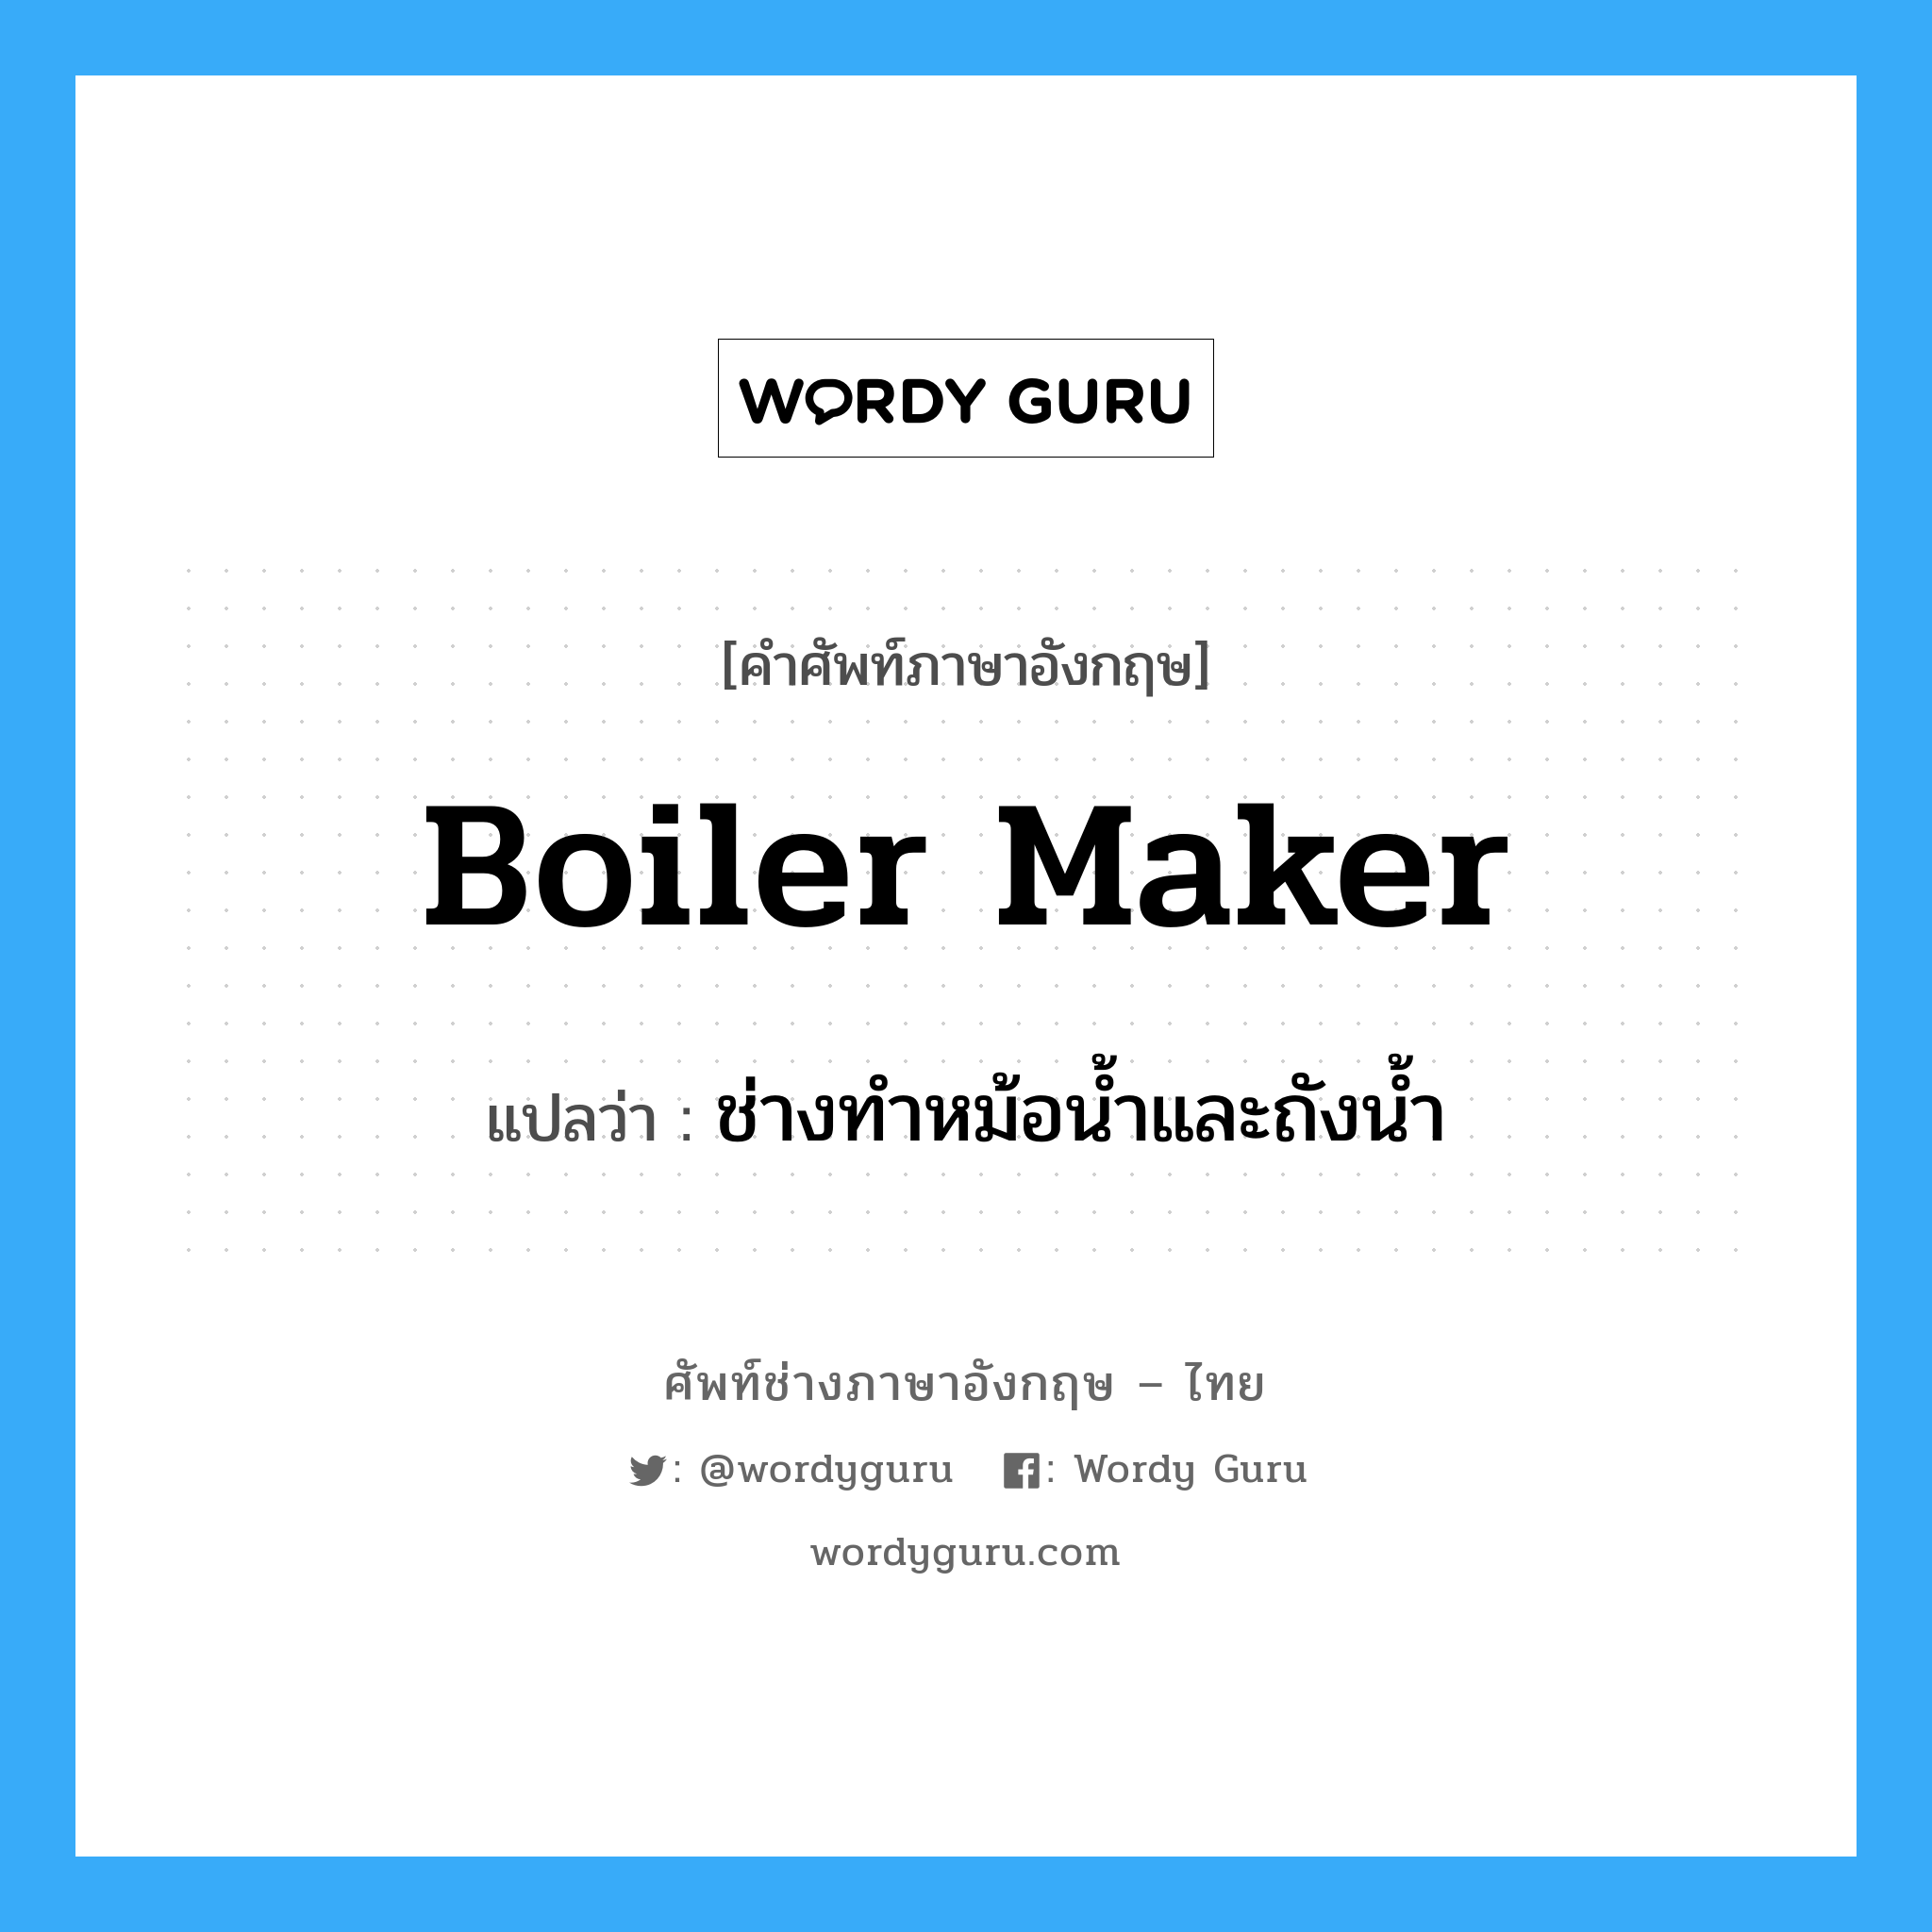 ช่างทำหม้อน้ำและถังน้ำ ภาษาอังกฤษ?, คำศัพท์ช่างภาษาอังกฤษ - ไทย ช่างทำหม้อน้ำและถังน้ำ คำศัพท์ภาษาอังกฤษ ช่างทำหม้อน้ำและถังน้ำ แปลว่า boiler maker